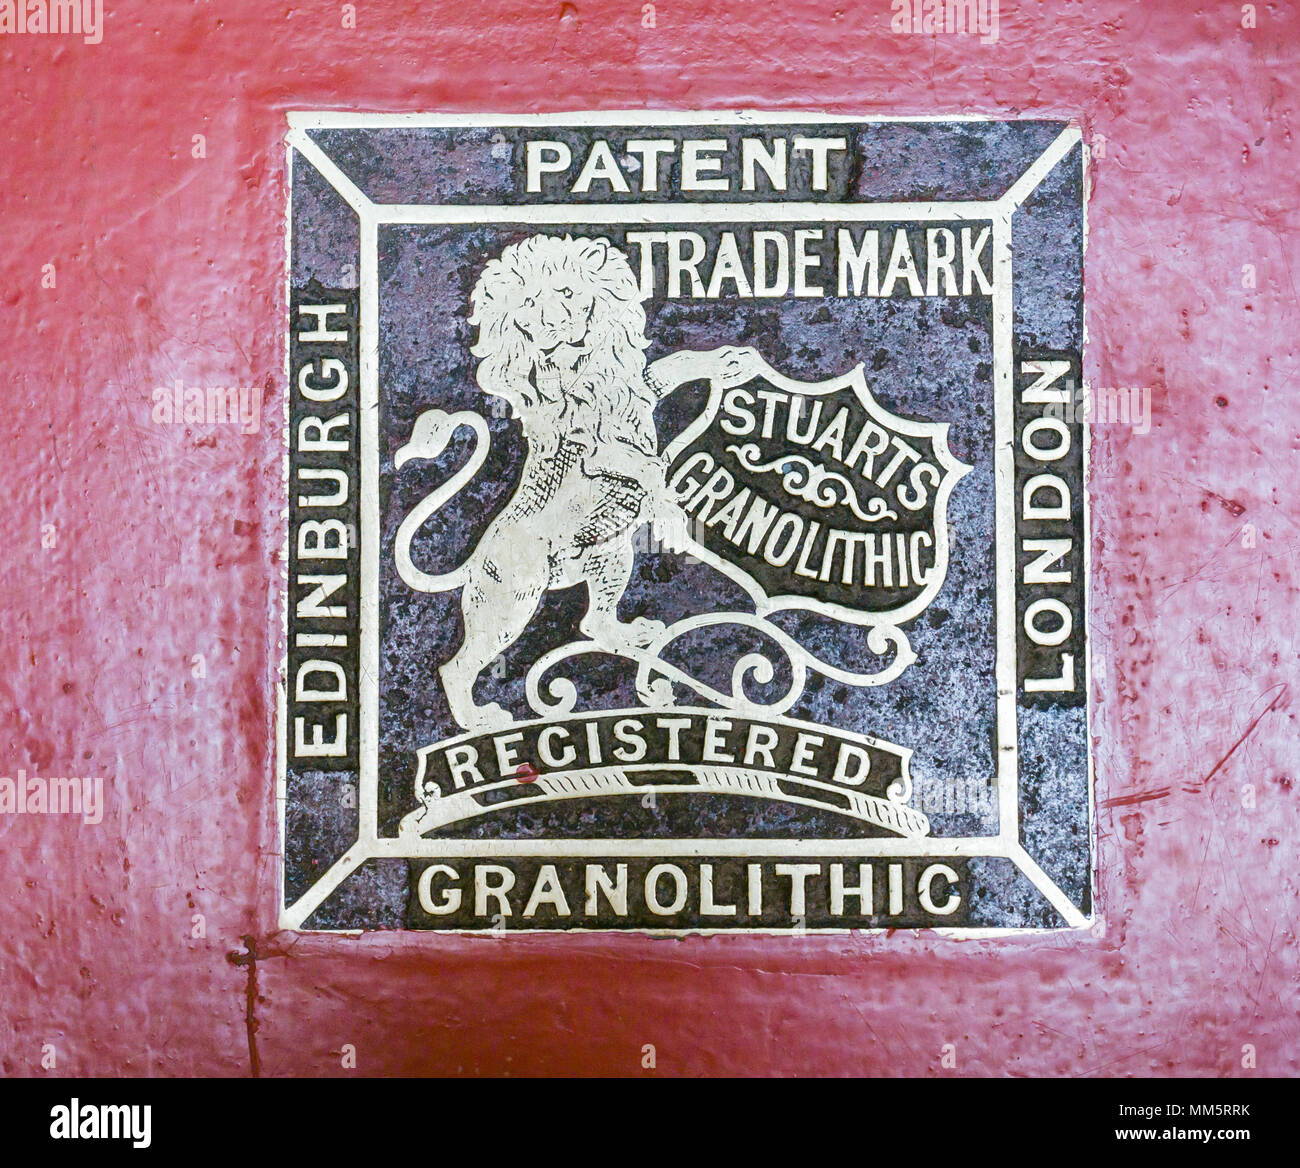 Primer plano de marcador de latón en el piso del edificio victoriano, Edimburgo, Escocia, Reino Unido, con la Marca registrada y patente de Stuart granolítico Foto de stock